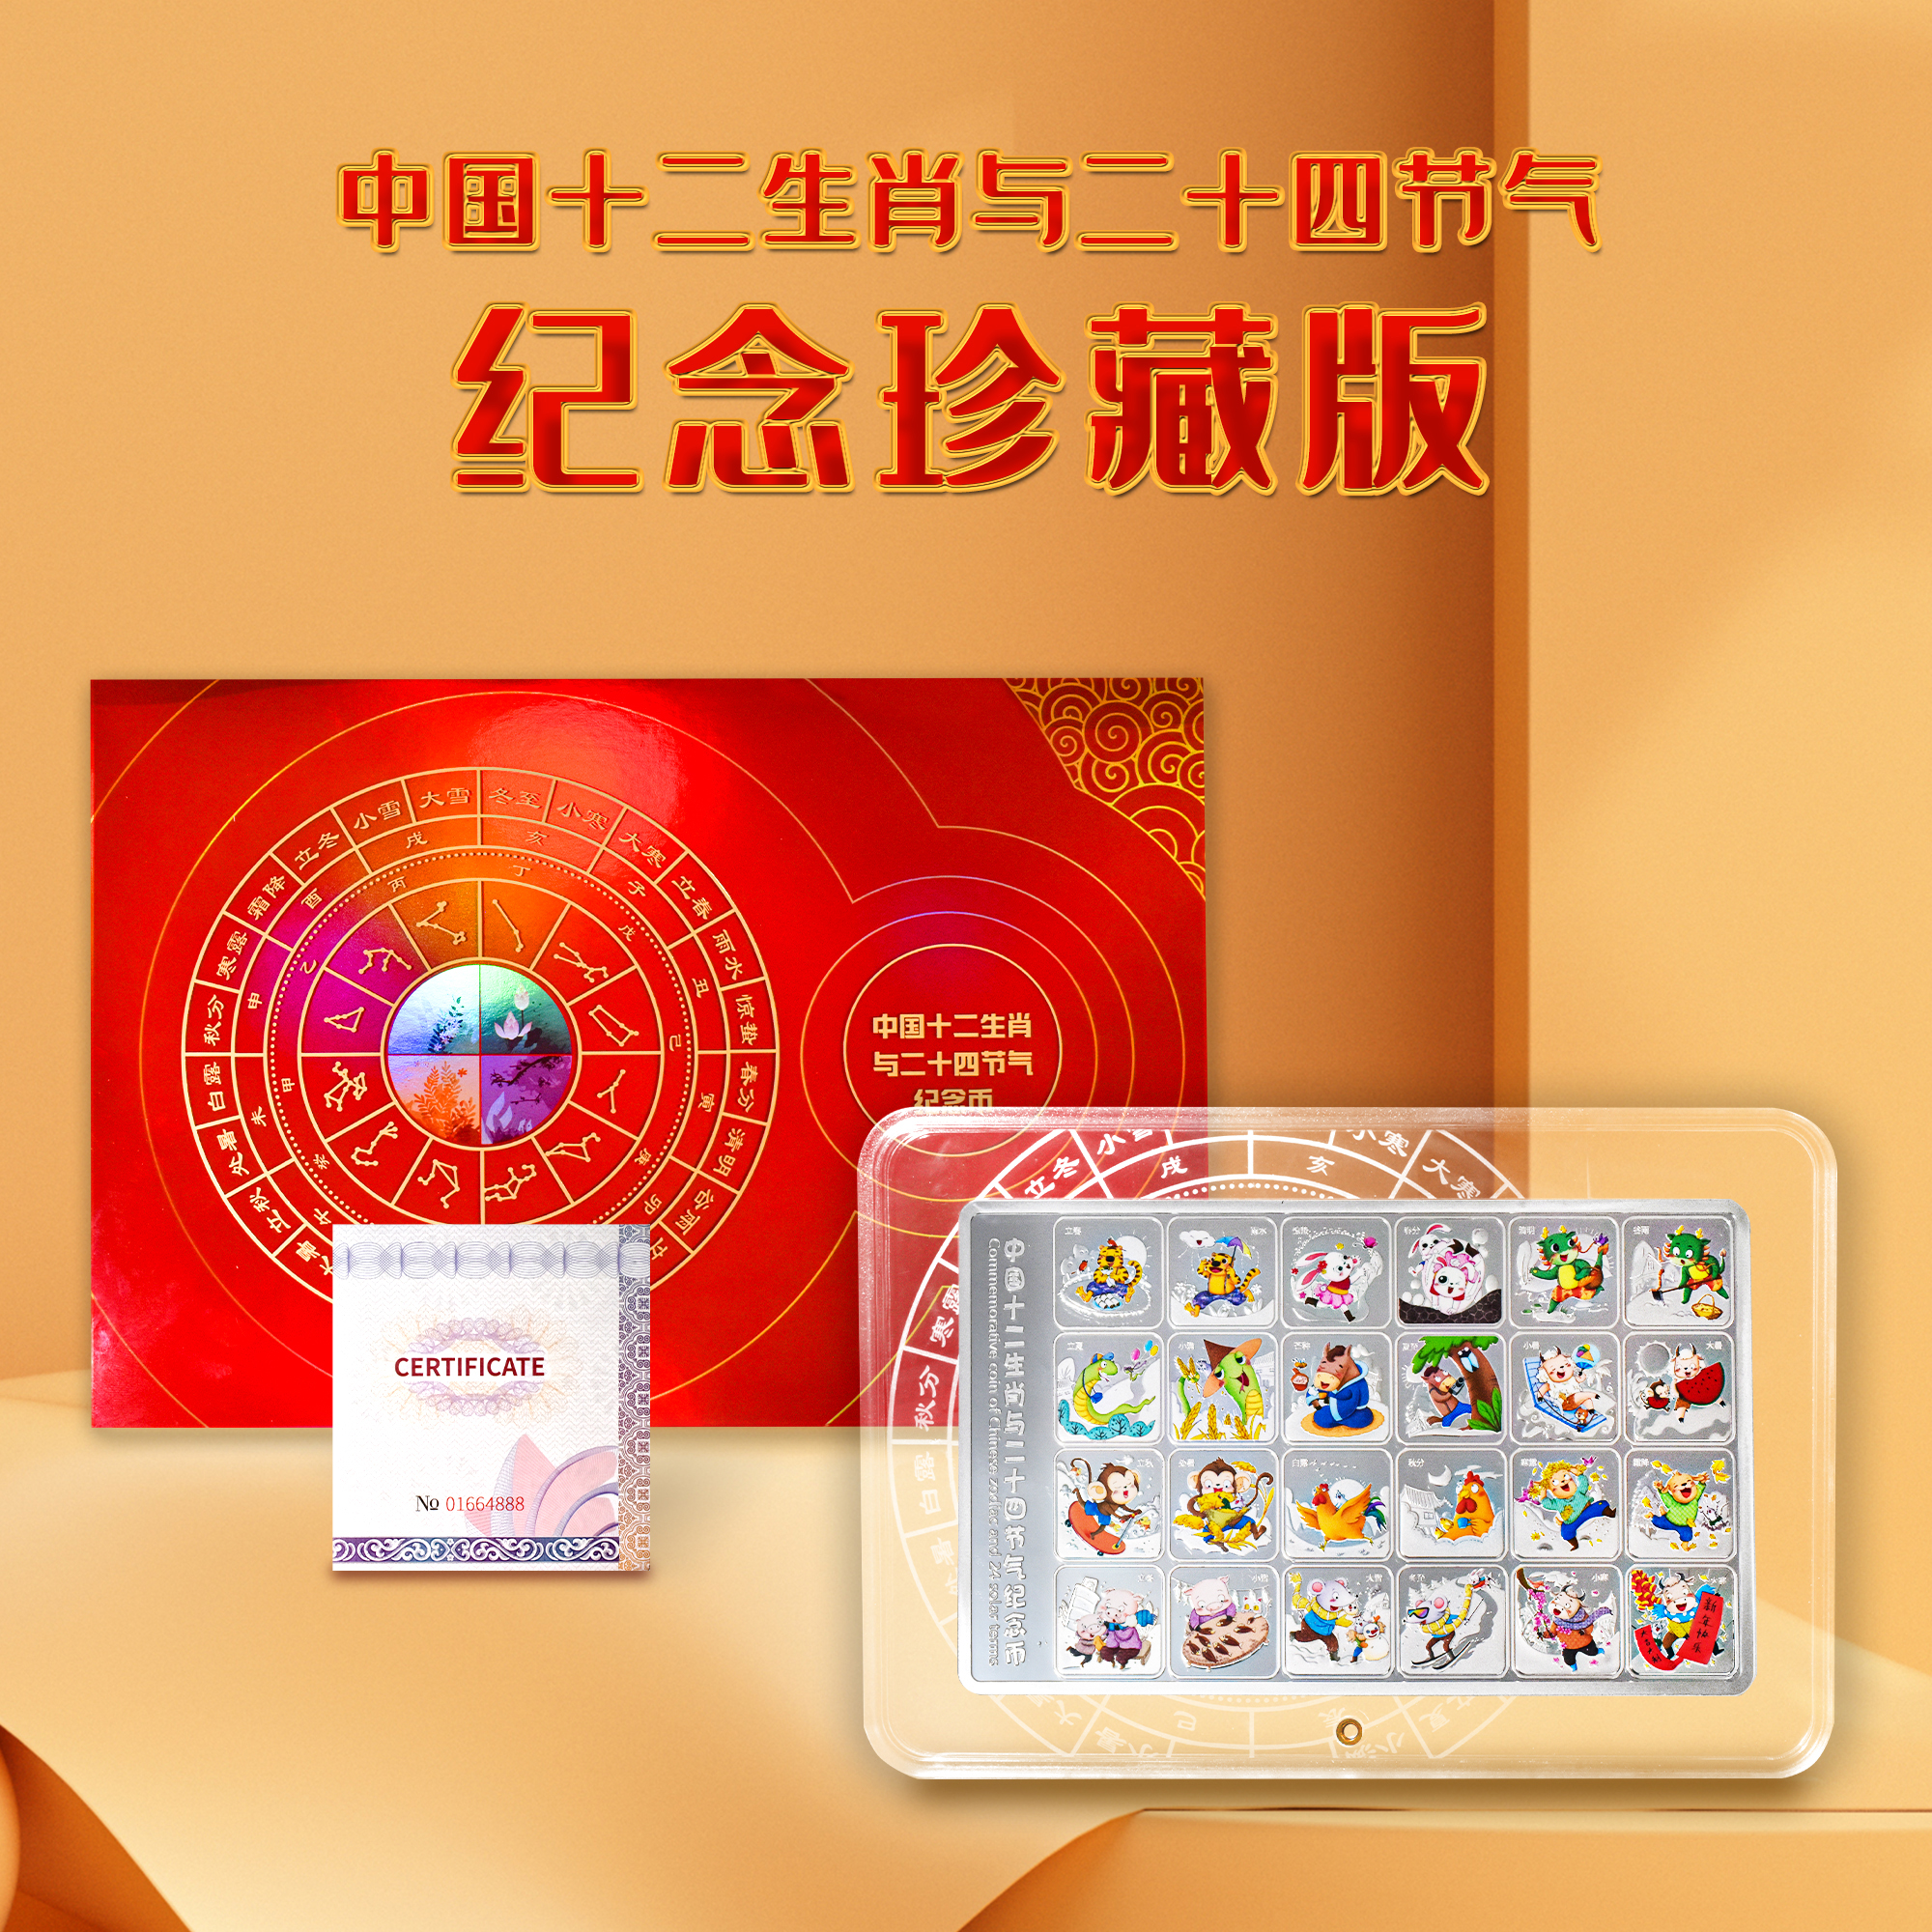 【预定】中国12生肖与24节气精制纪念币 包邮